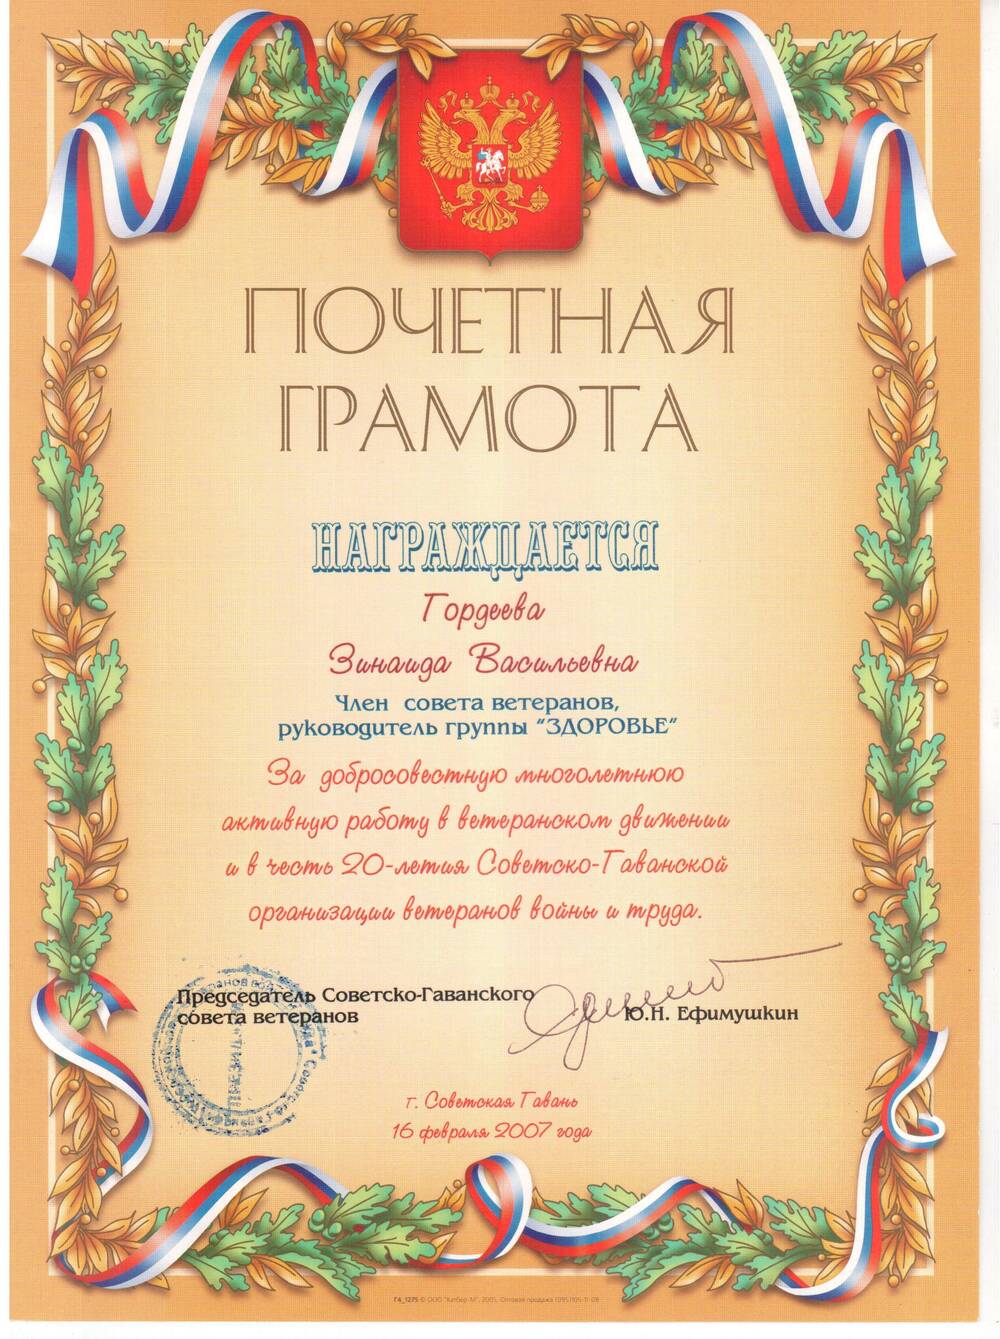 Почетная грамота Гордеевой З.В. в честь 20-летия Советско-Гаванской организации ветеранов войны и труда